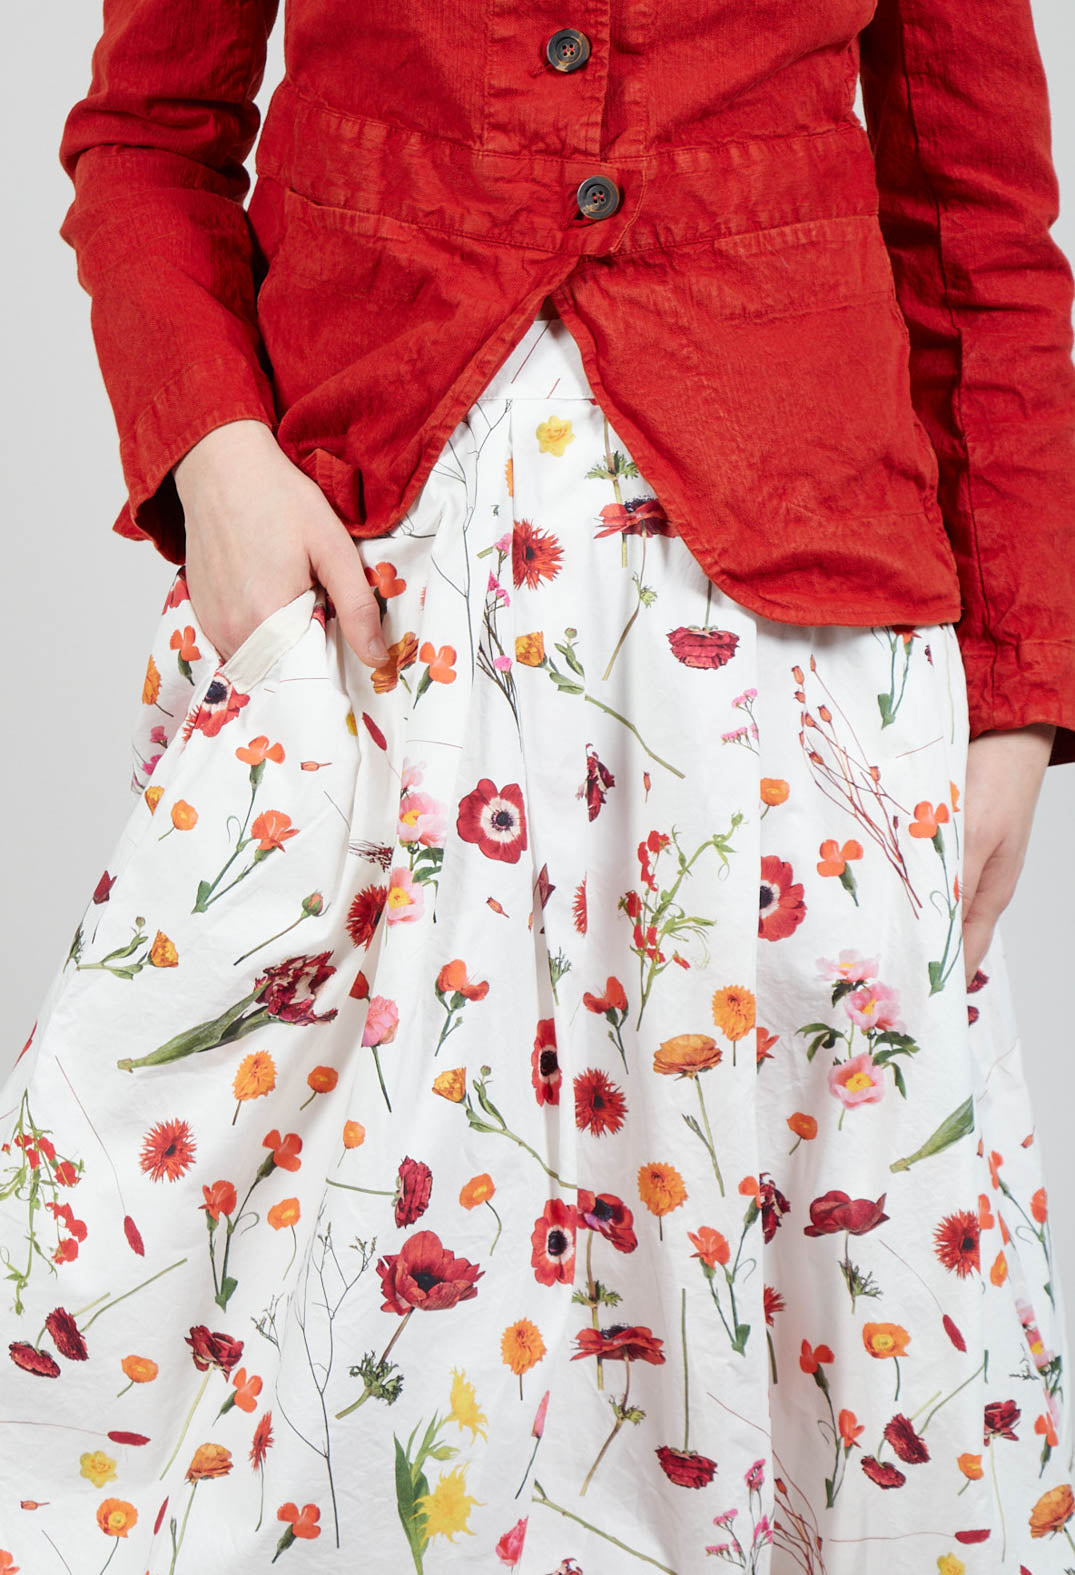 Jamila Skirt in Red Flower Print